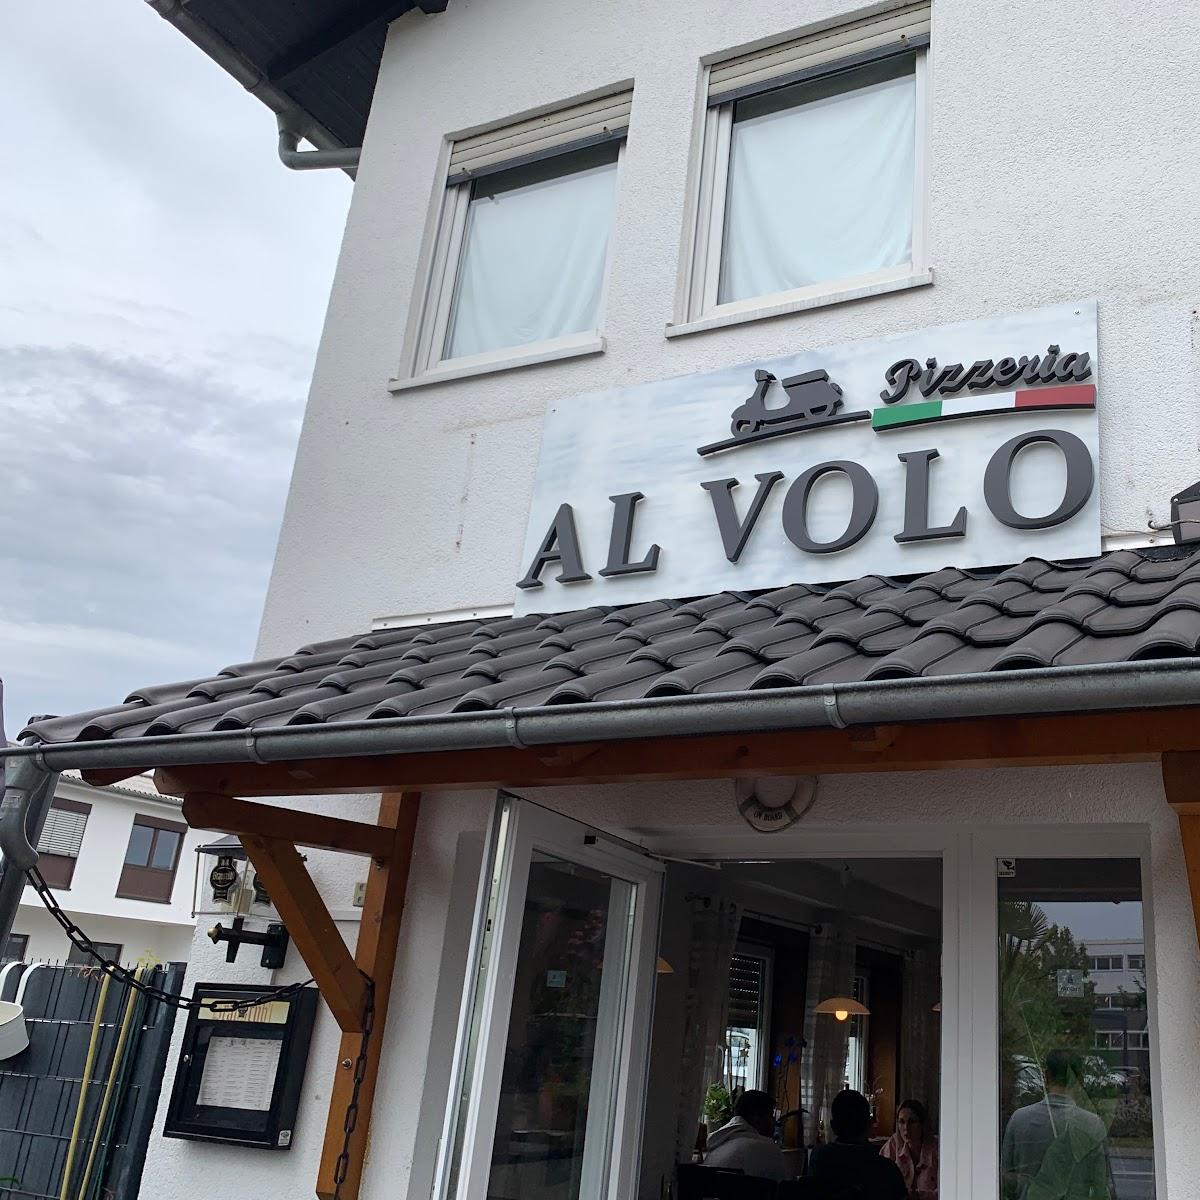 Restaurant "Pizzeria Al Volo" in Langen (Hessen)